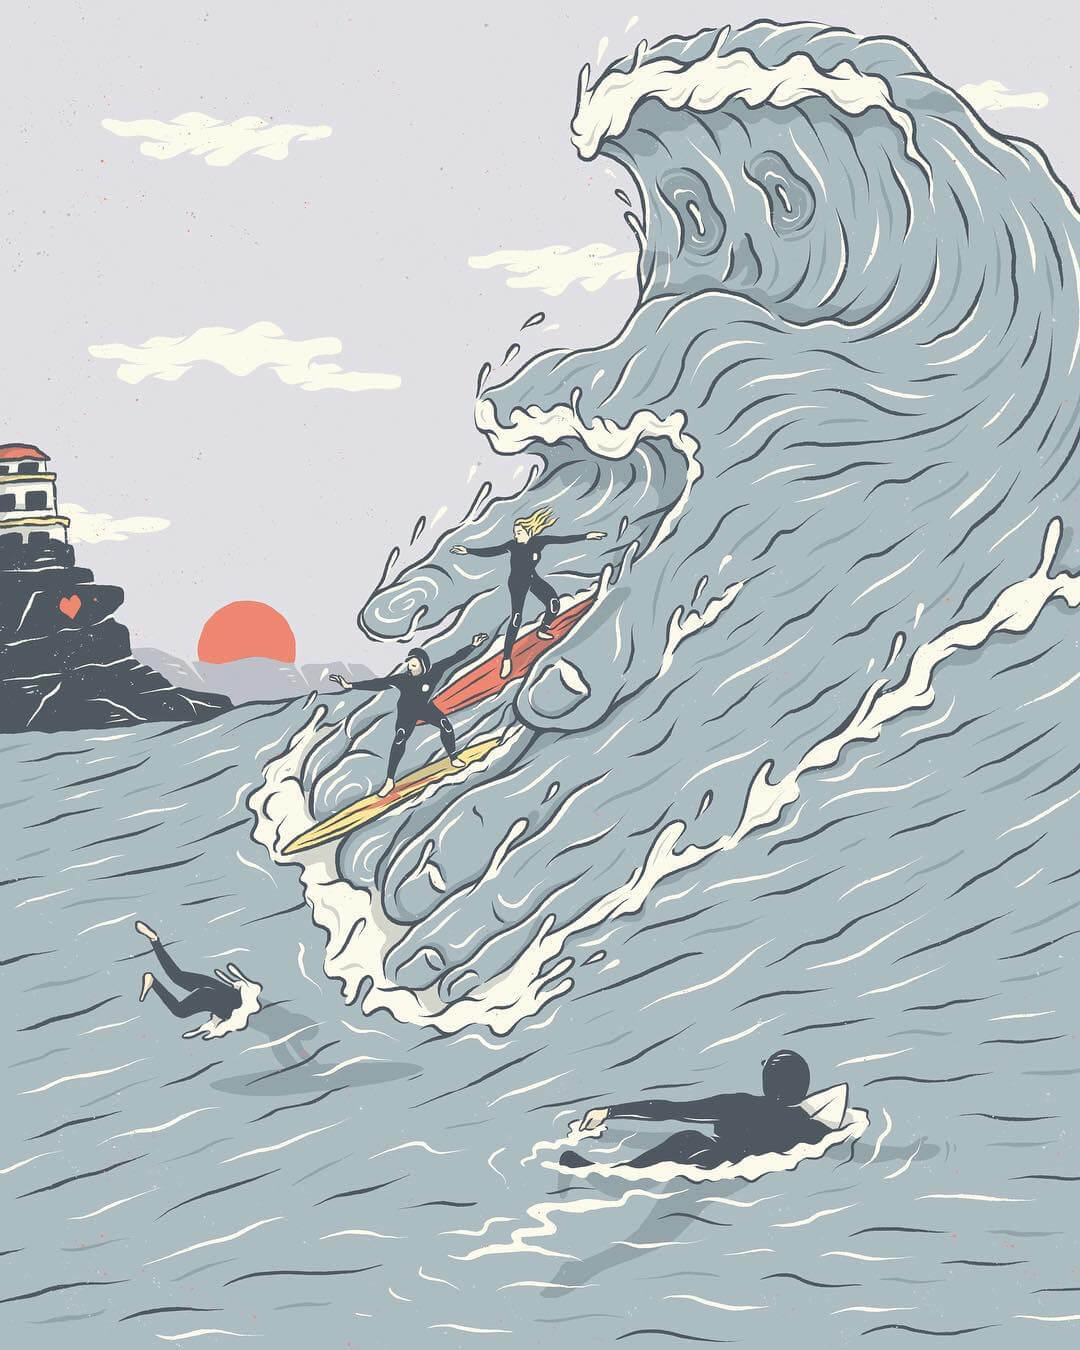 Surfing illustration by Kentaro Yoshida